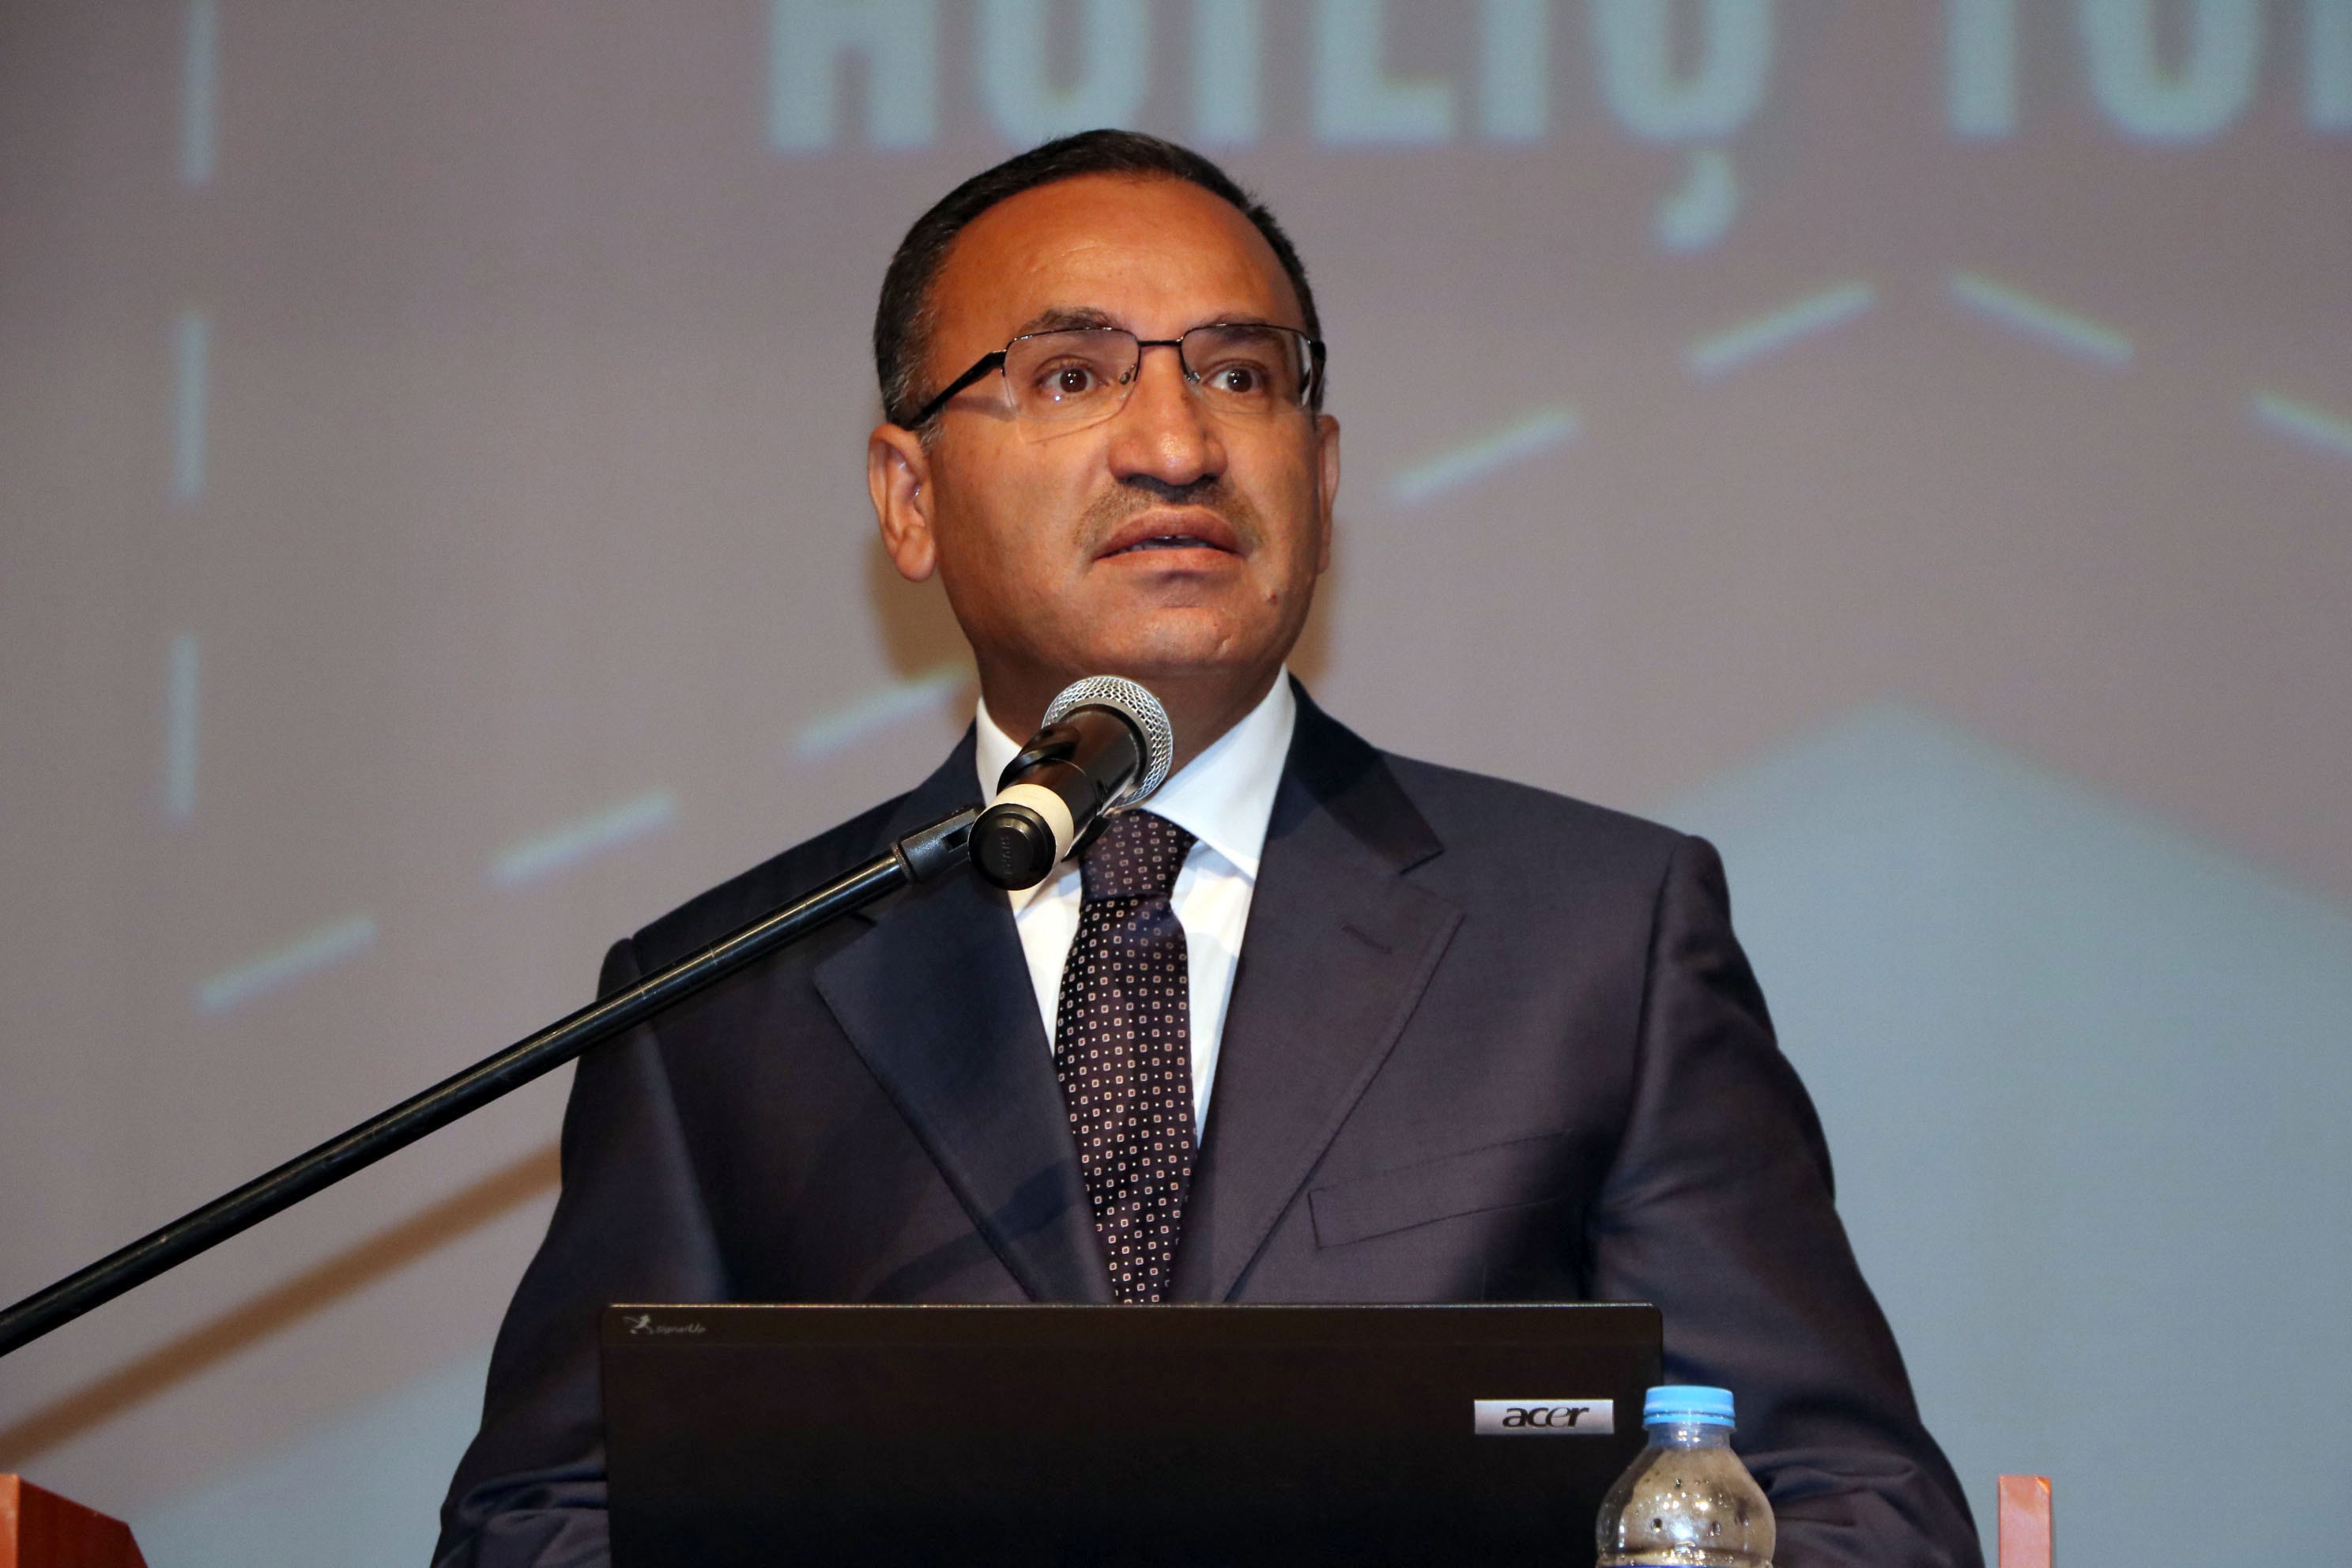 Adalet Bakanı Bekir Bozdağ, Kemal Kılıçdaroğlu'na adeta had bildirdi! Seviyesiz,ahlak ve hukuk dışı ifadeleri...